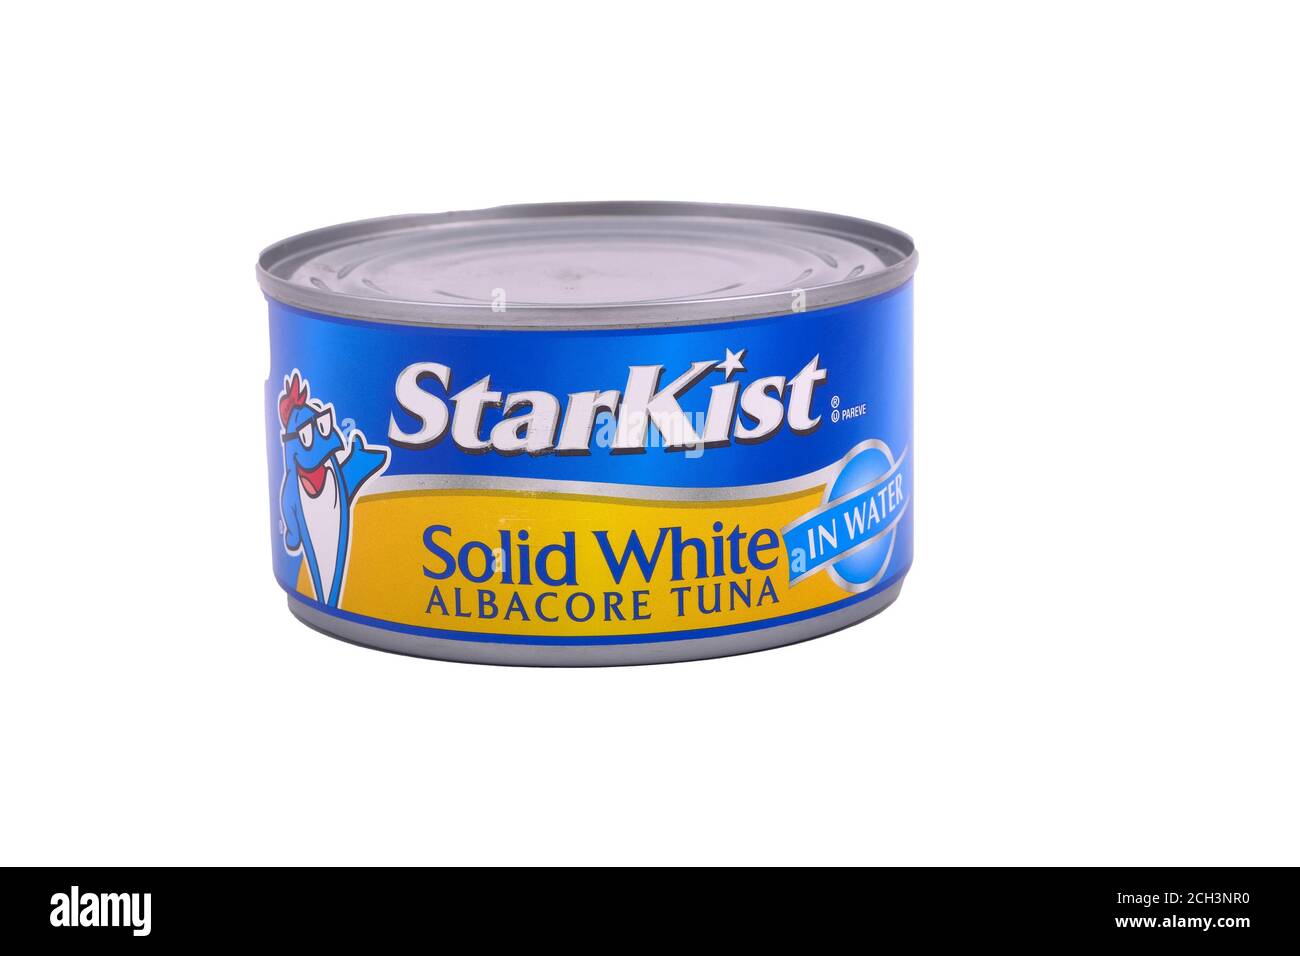 Solid White Albacore Tuna Stock Photo